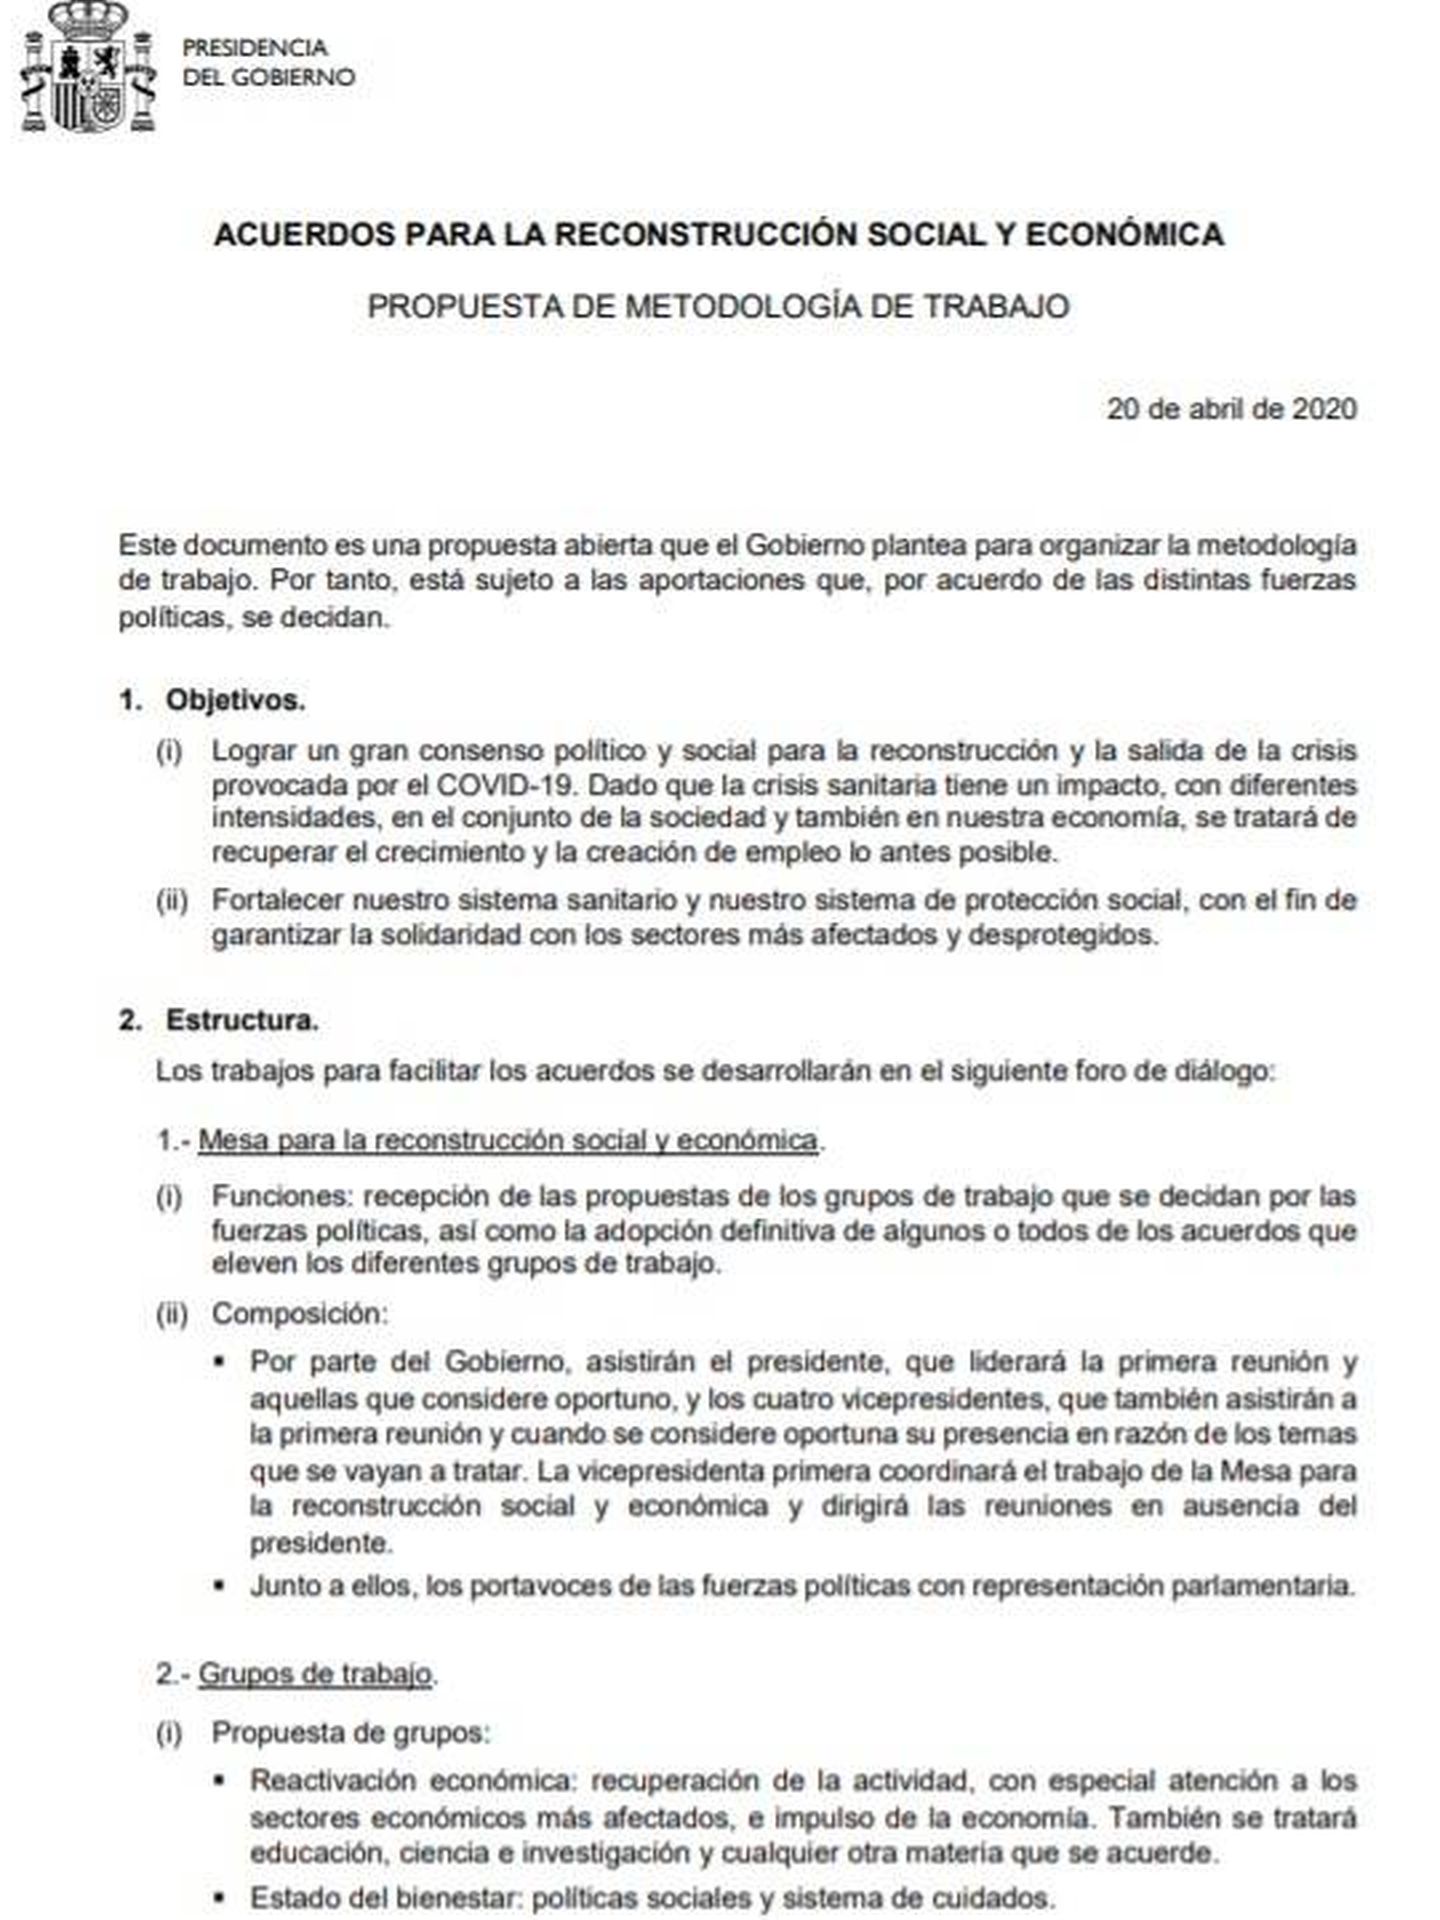 Consulte aquí en PDF la metodología de trabajo de la mesa para la reconstrucción propuesta por el Gobierno de Pedro Sánchez. 